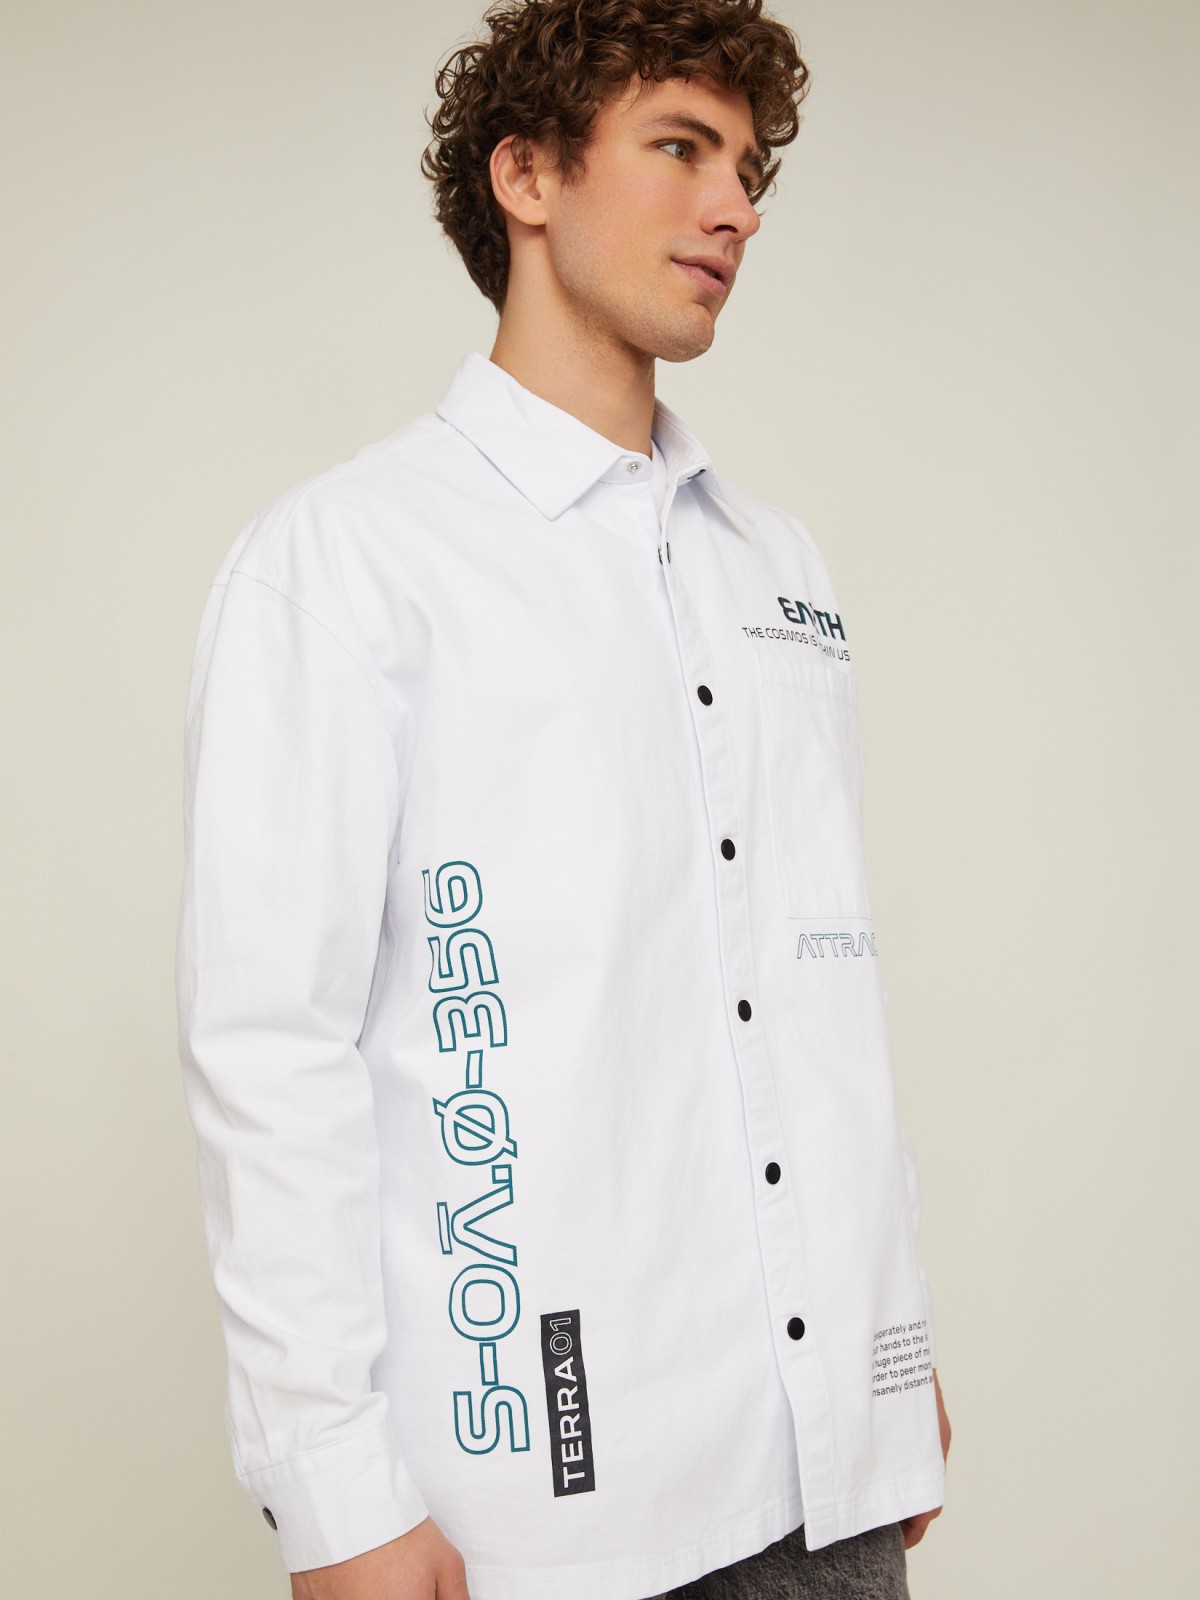 Куртка-рубашка из хлопка с принтом на спине zolla 014212159023, цвет белый, размер S - фото 3